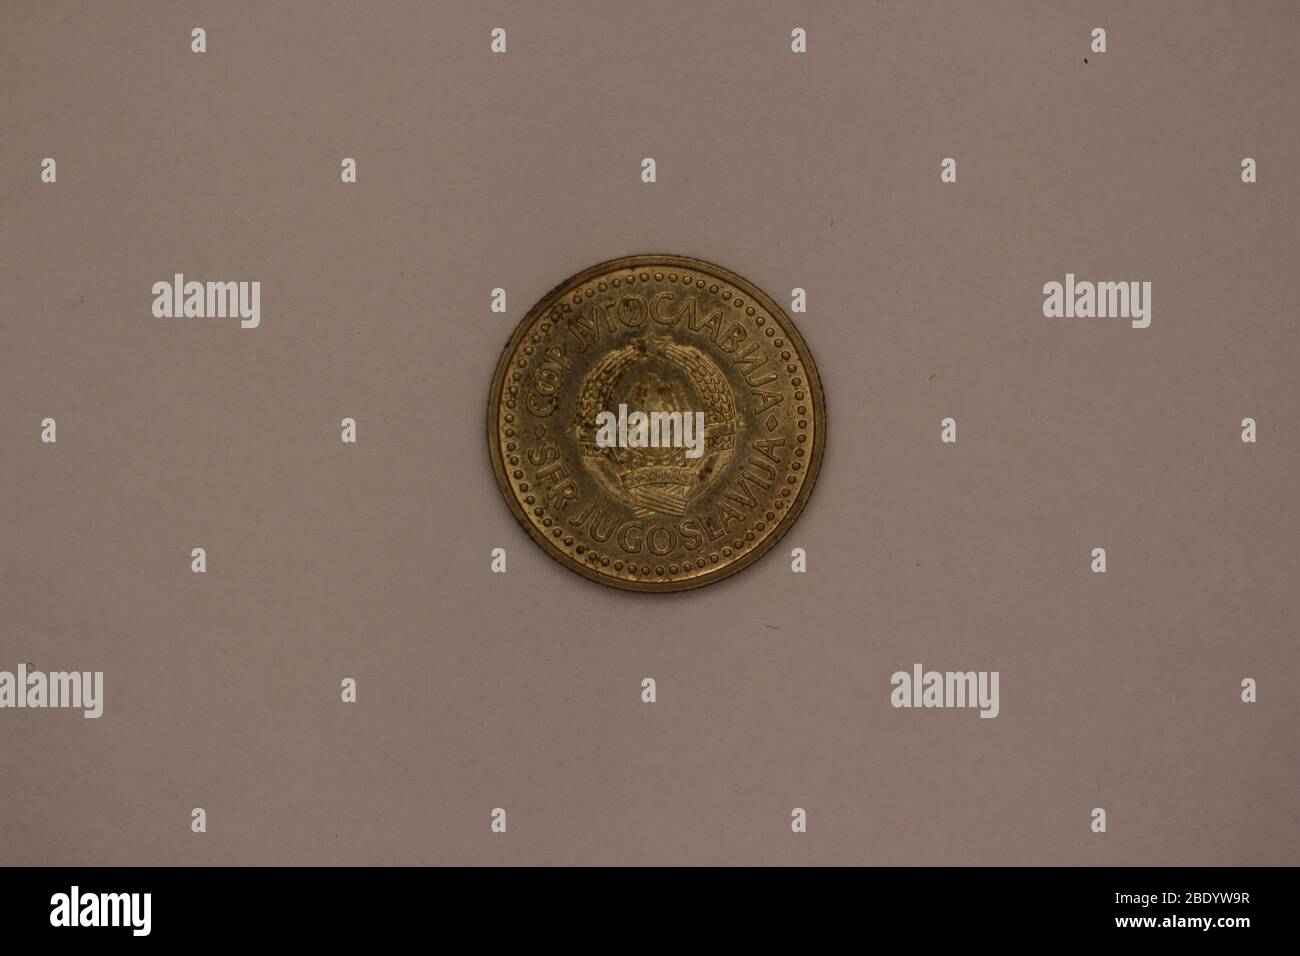 Großaufnahme einer ehemaligen Jugoslawischen 2 dinaro Münze Foto Stock